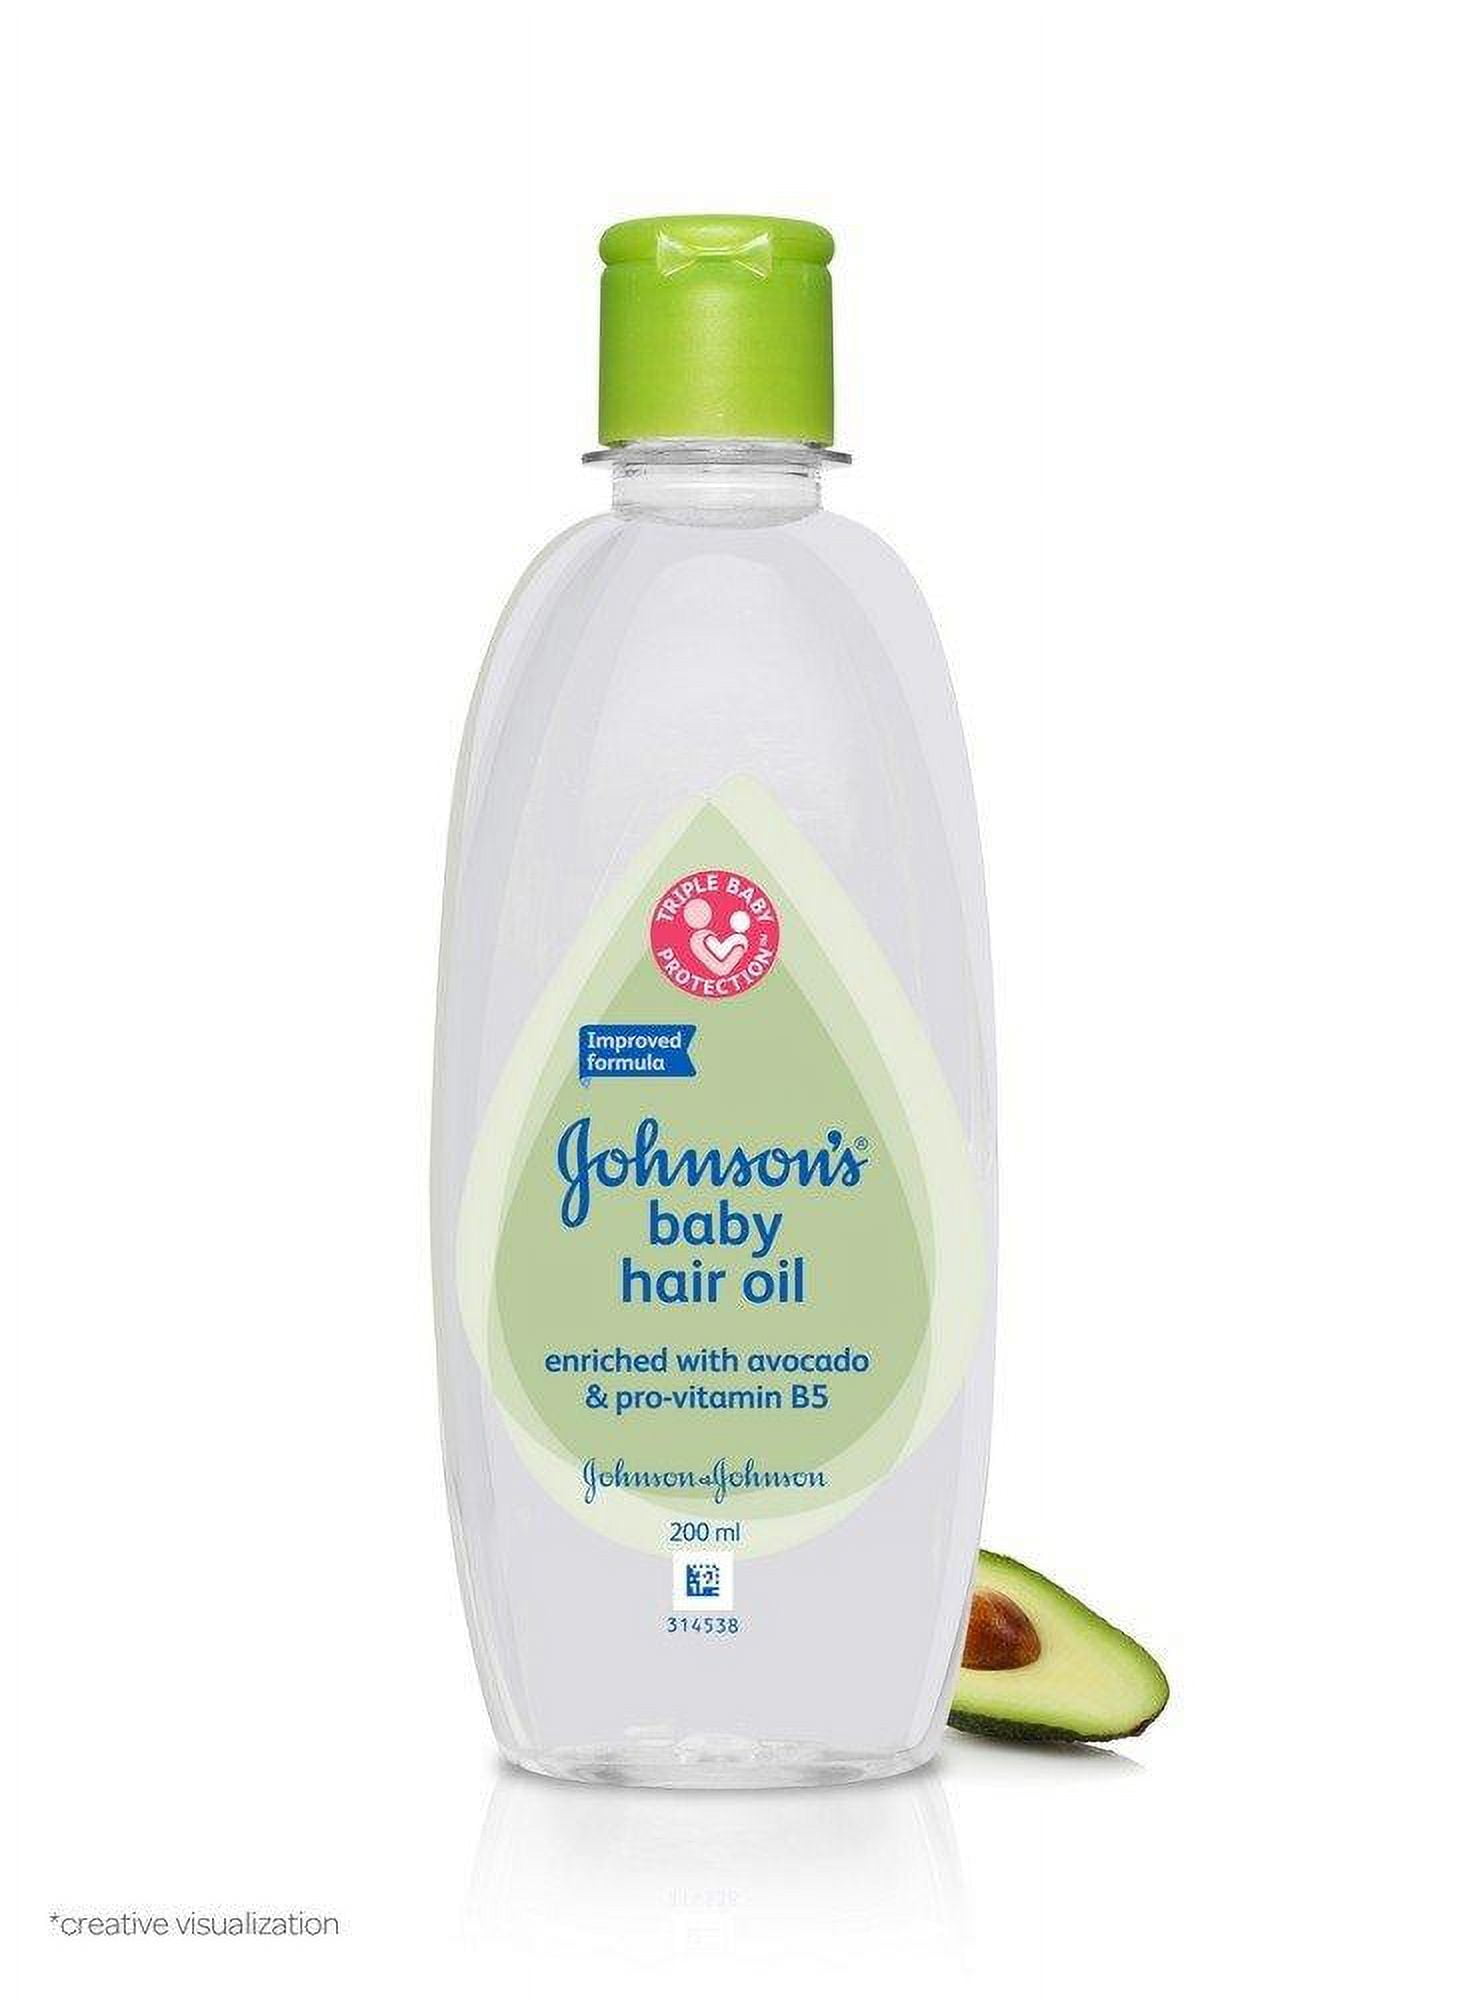 Buy Johnson's Baby Oil 200ml Online